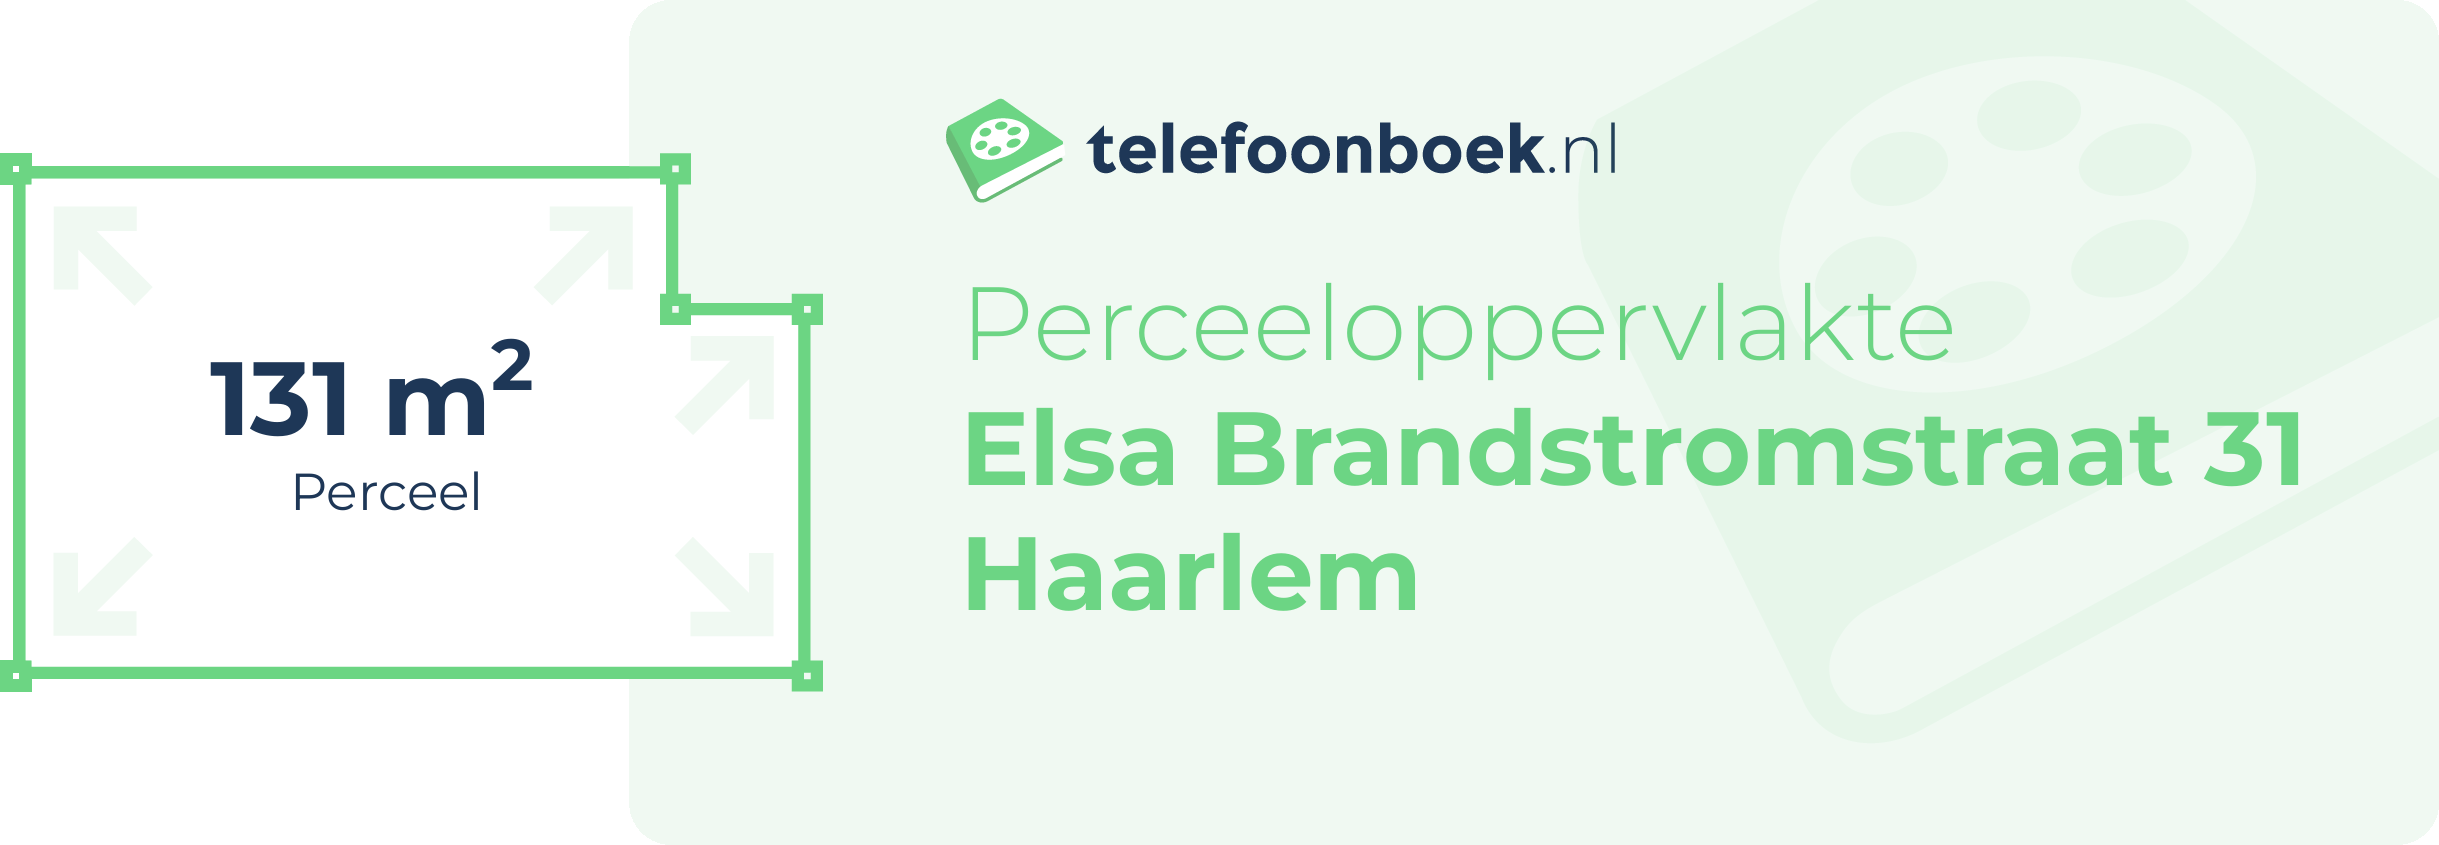 Perceeloppervlakte Elsa Brandstromstraat 31 Haarlem